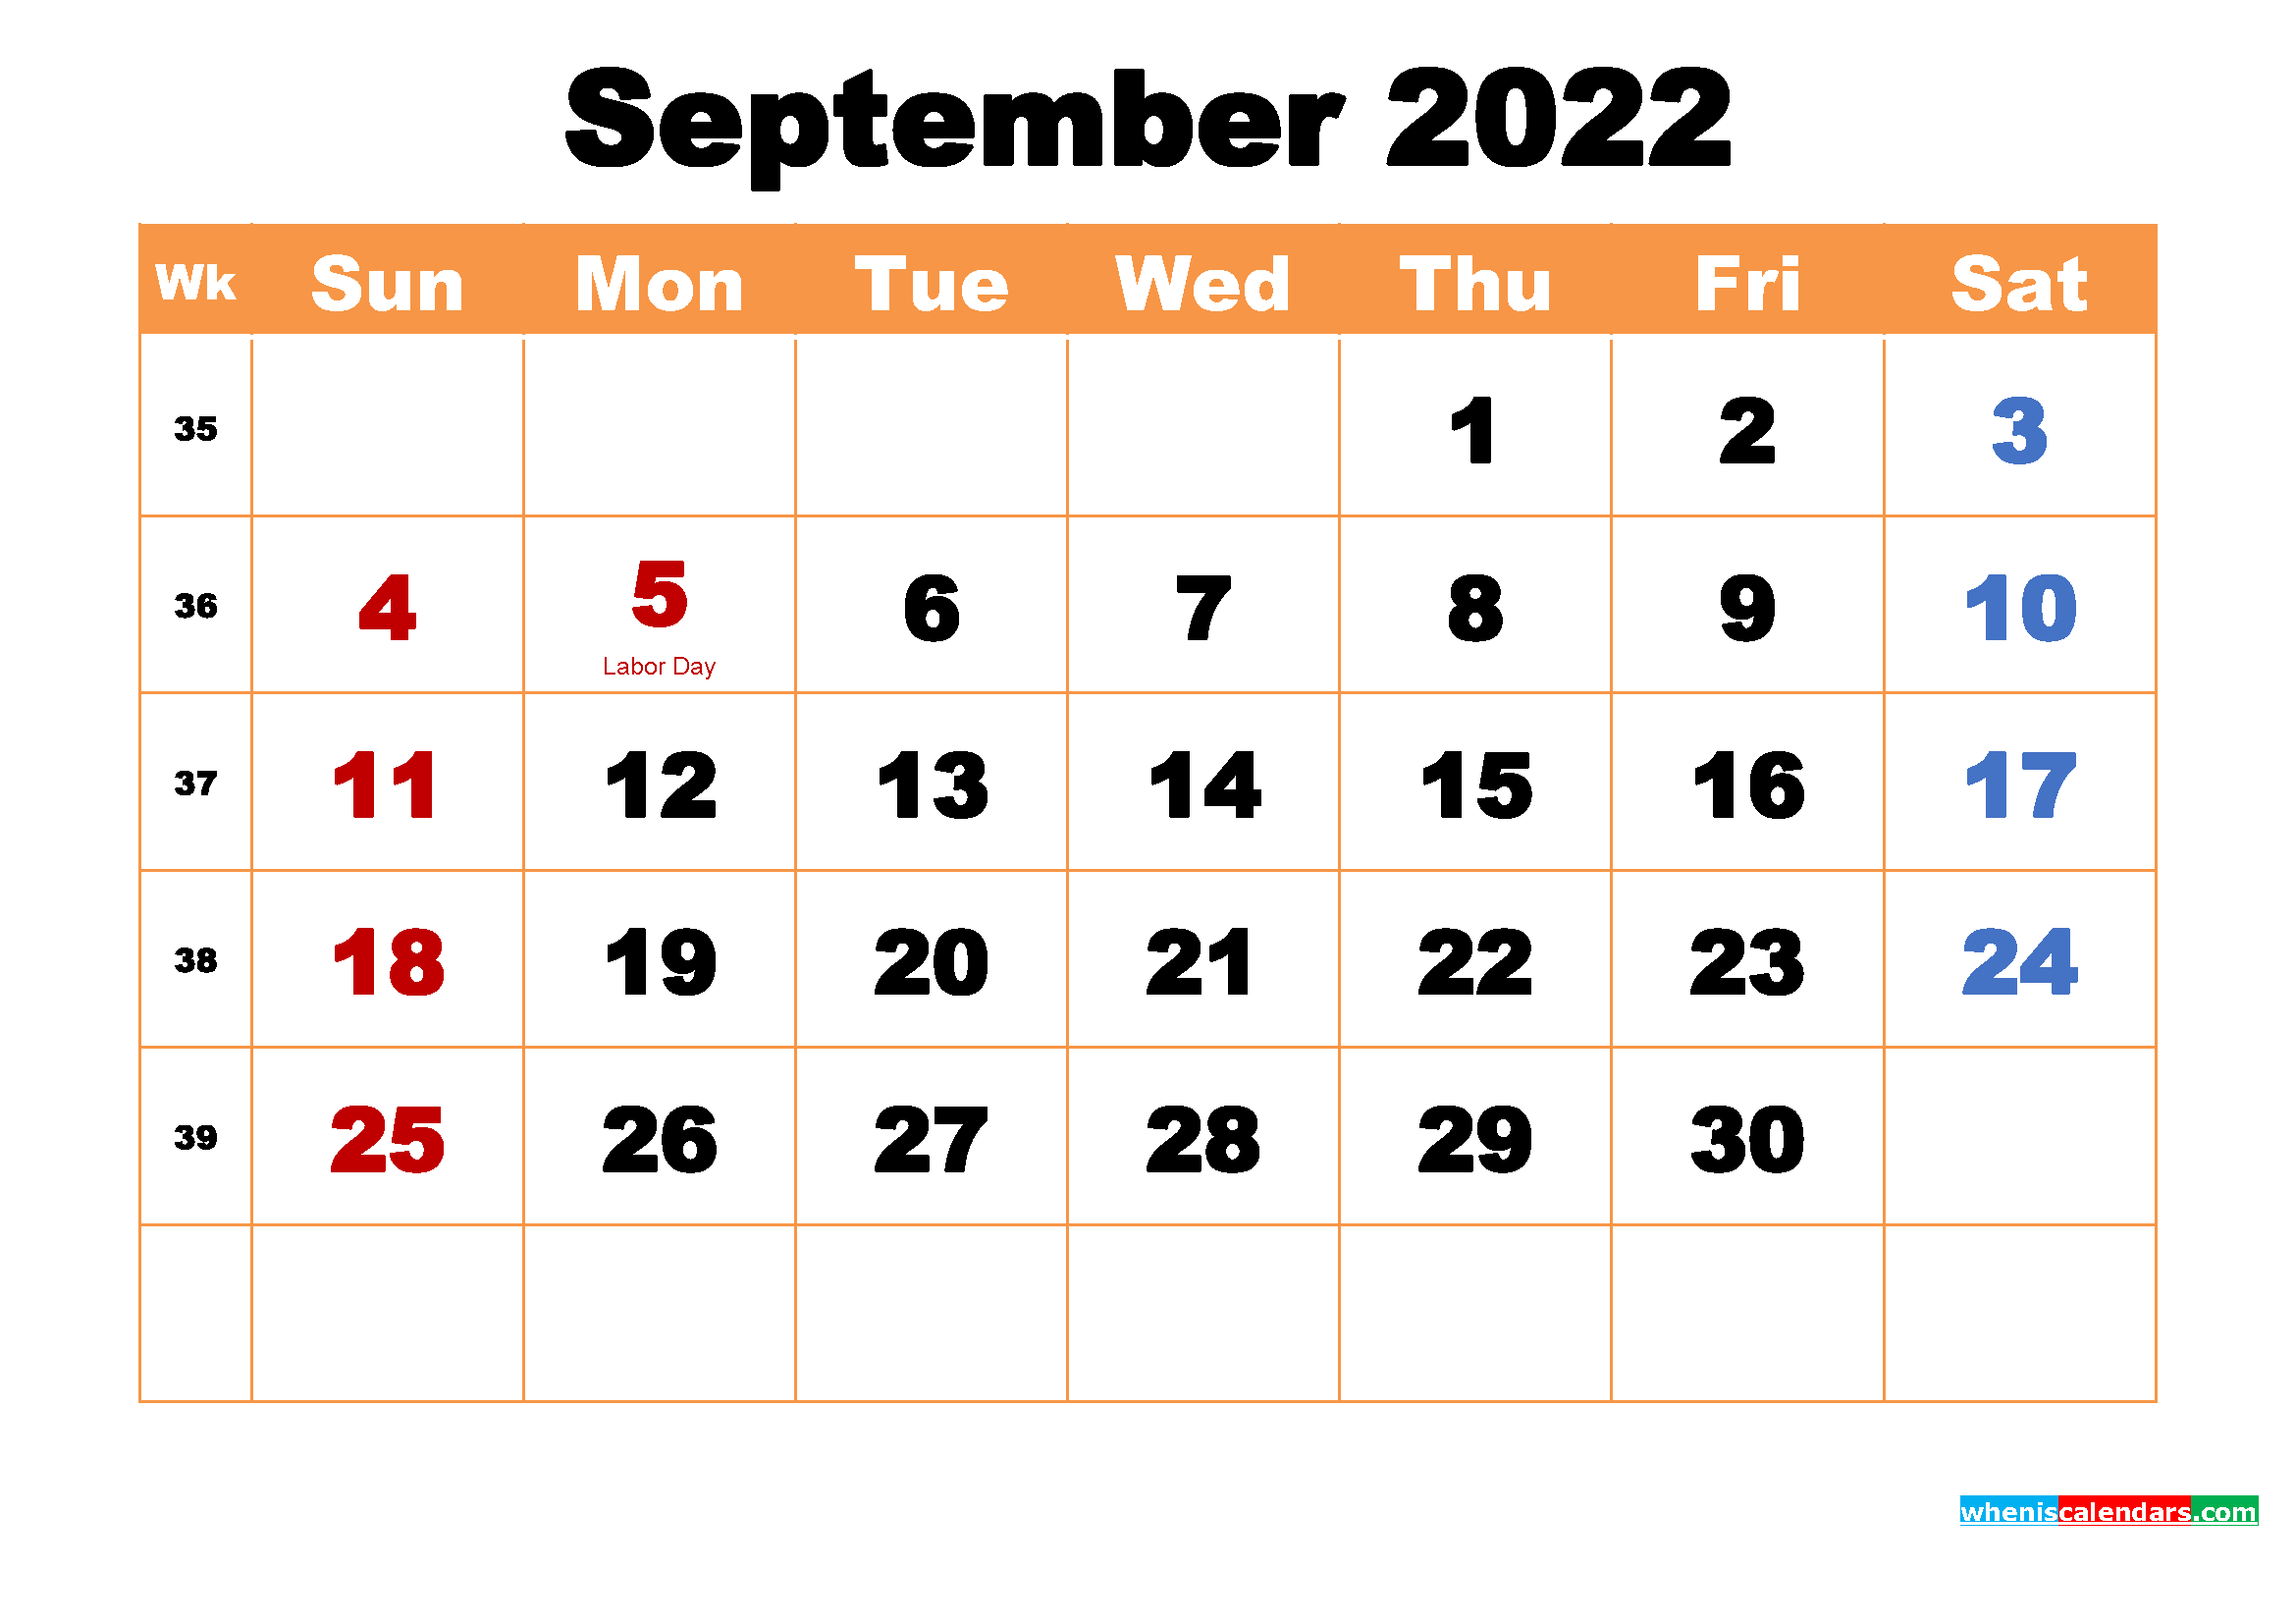 September 2022 Calendar Wallpaper.September 2022 Calendar Wallpapers Wallpaper Cave